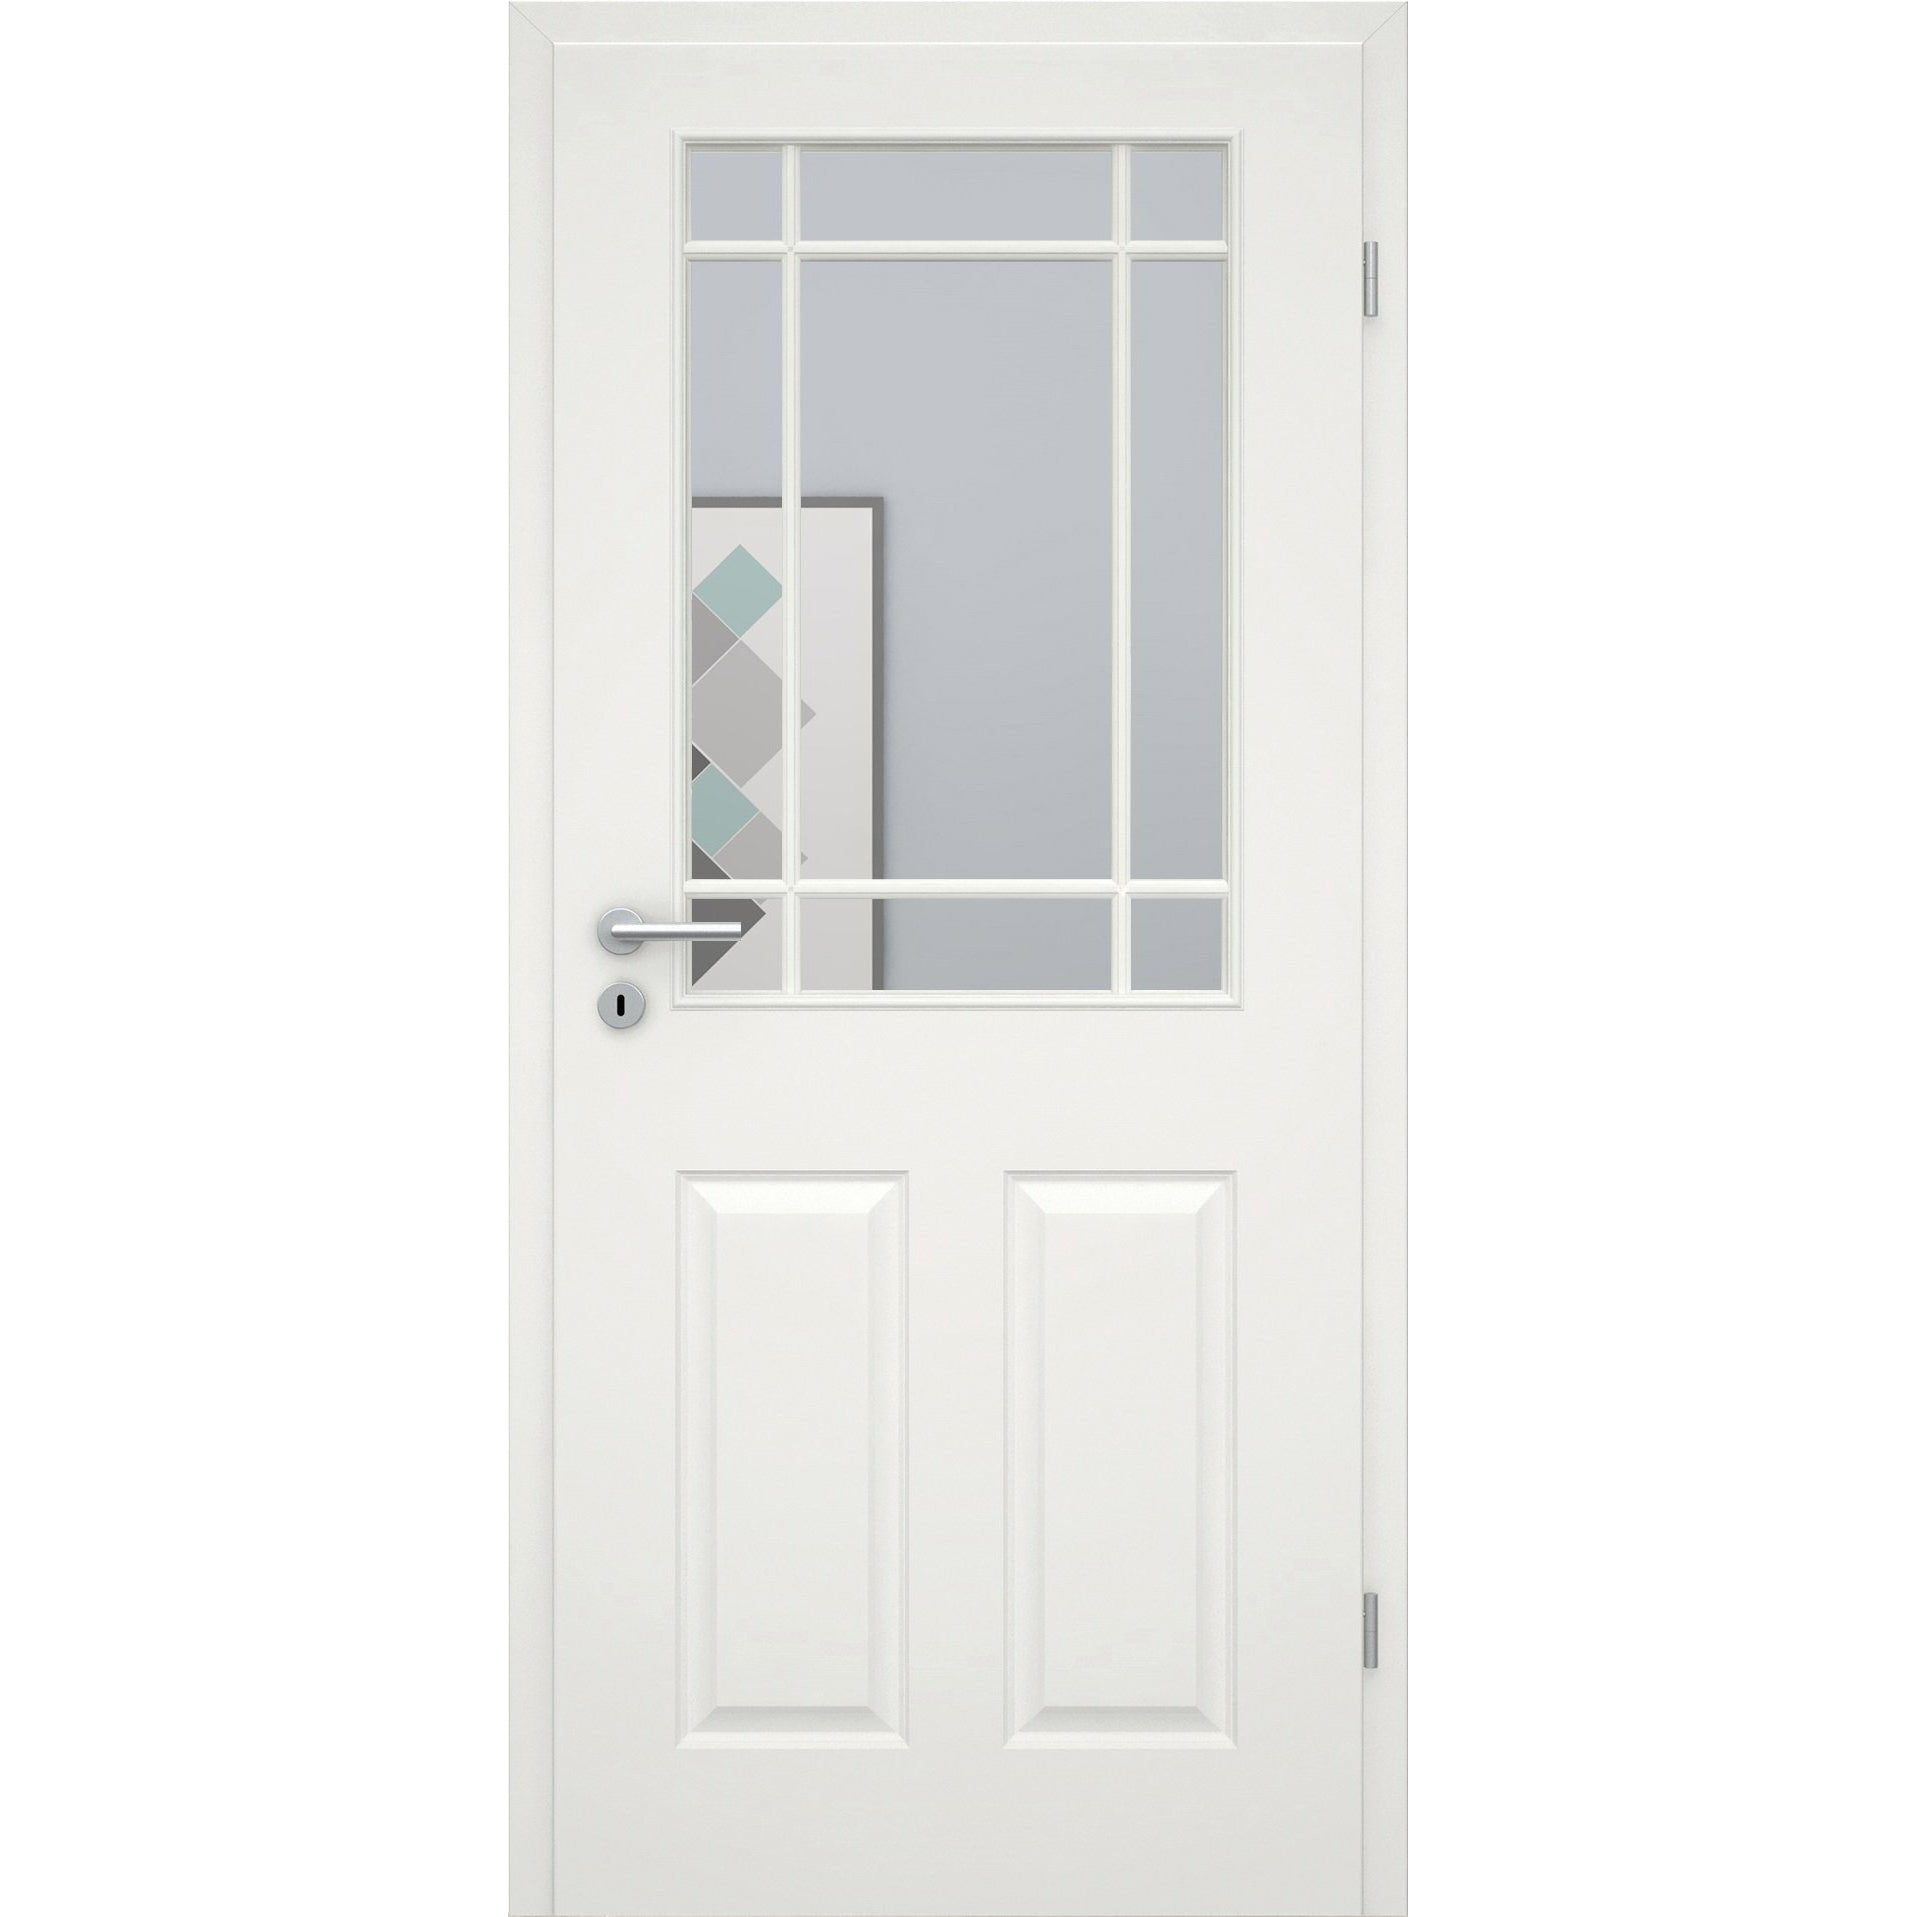 Zimmertür mit Lichtausschnitt mit Sprossenrahmen klassisch soft-weiß 4 Kassetten Eckkante - Modell Stiltür K41LASPK